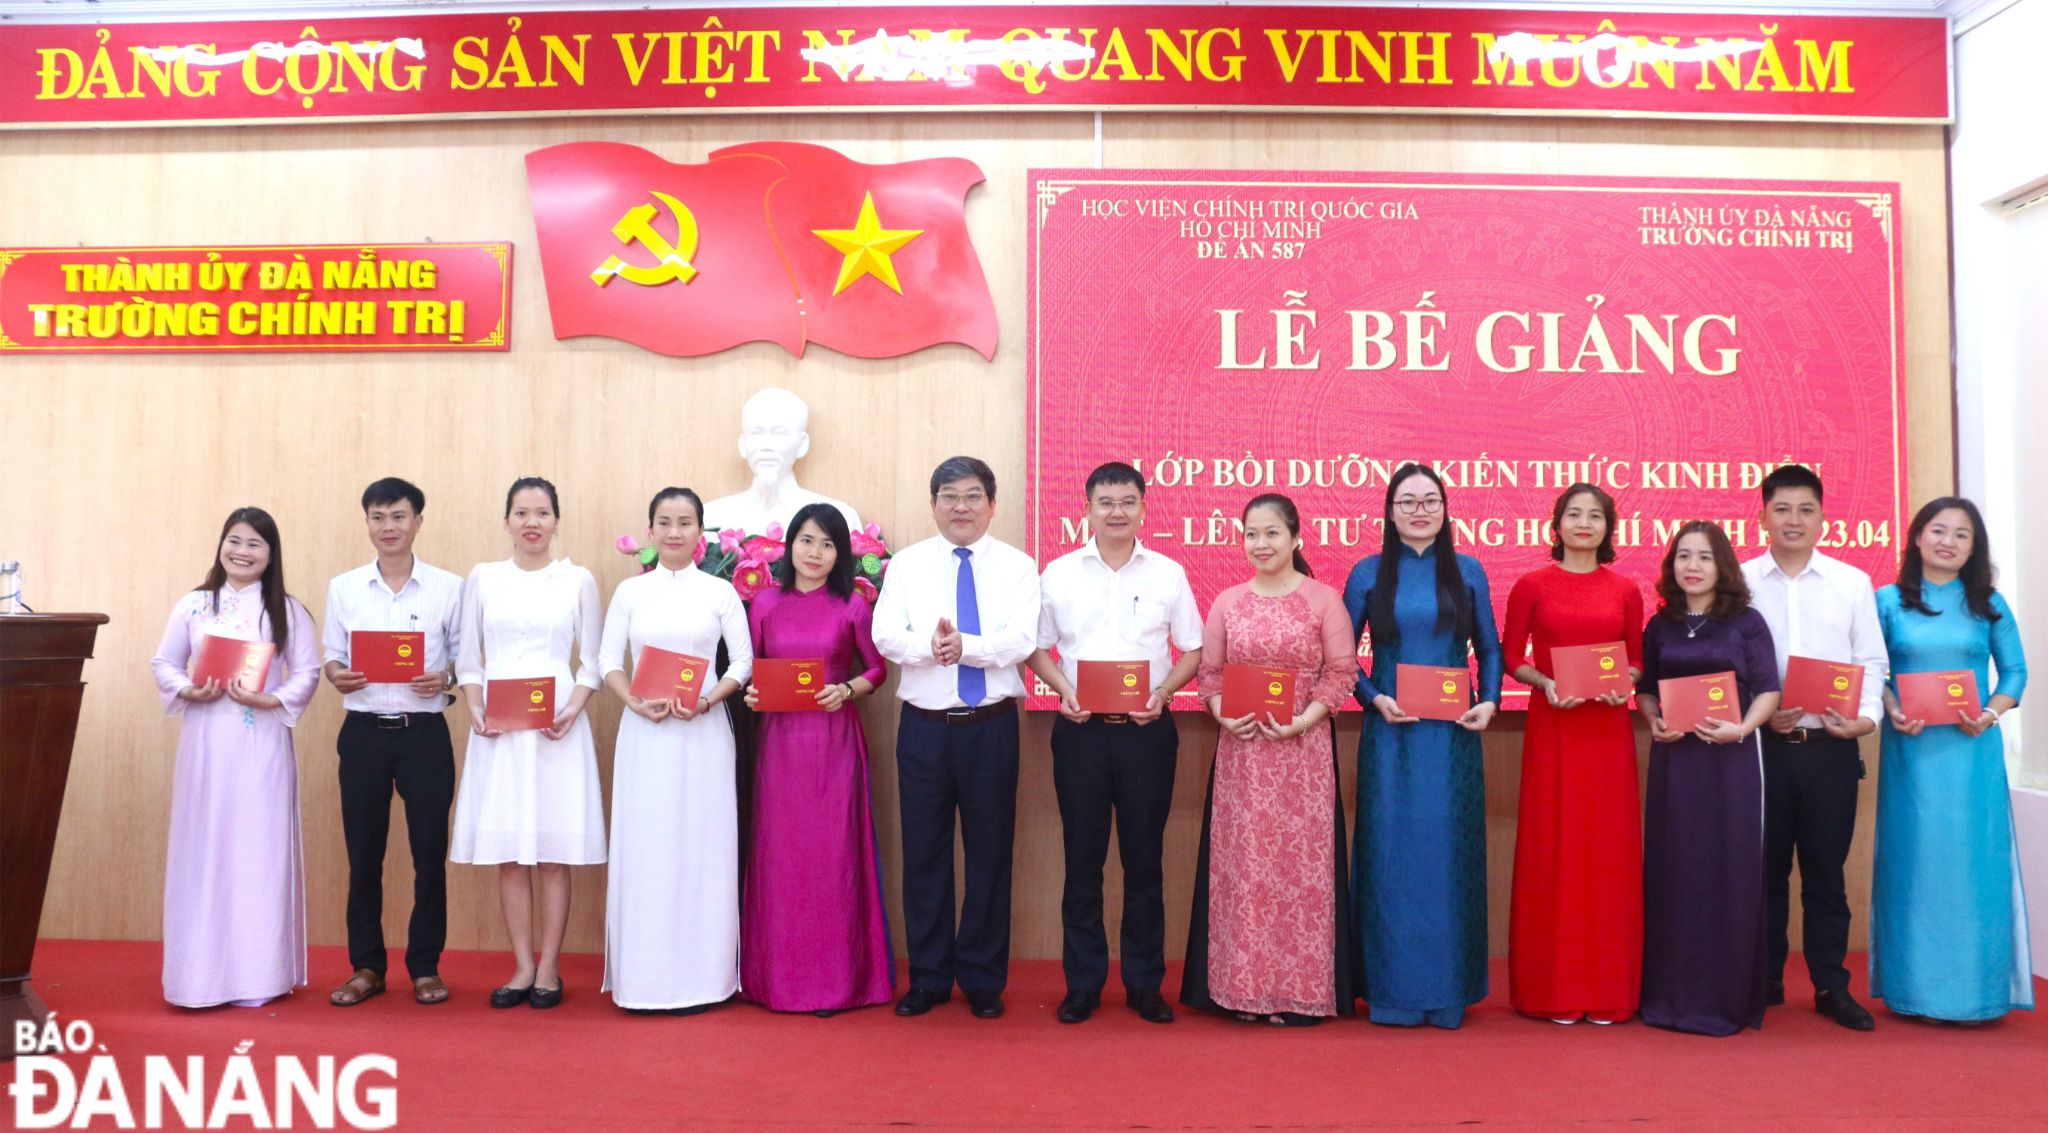 PGS. TS Nguyễn Duy Bắc - Phó Giám đốc Học viện Chính trị quốc gia Hồ Chí Minh (thứ 6, từ trái sang) trao chứng chỉ cho các học viên. Ảnh: T.PHƯƠNG